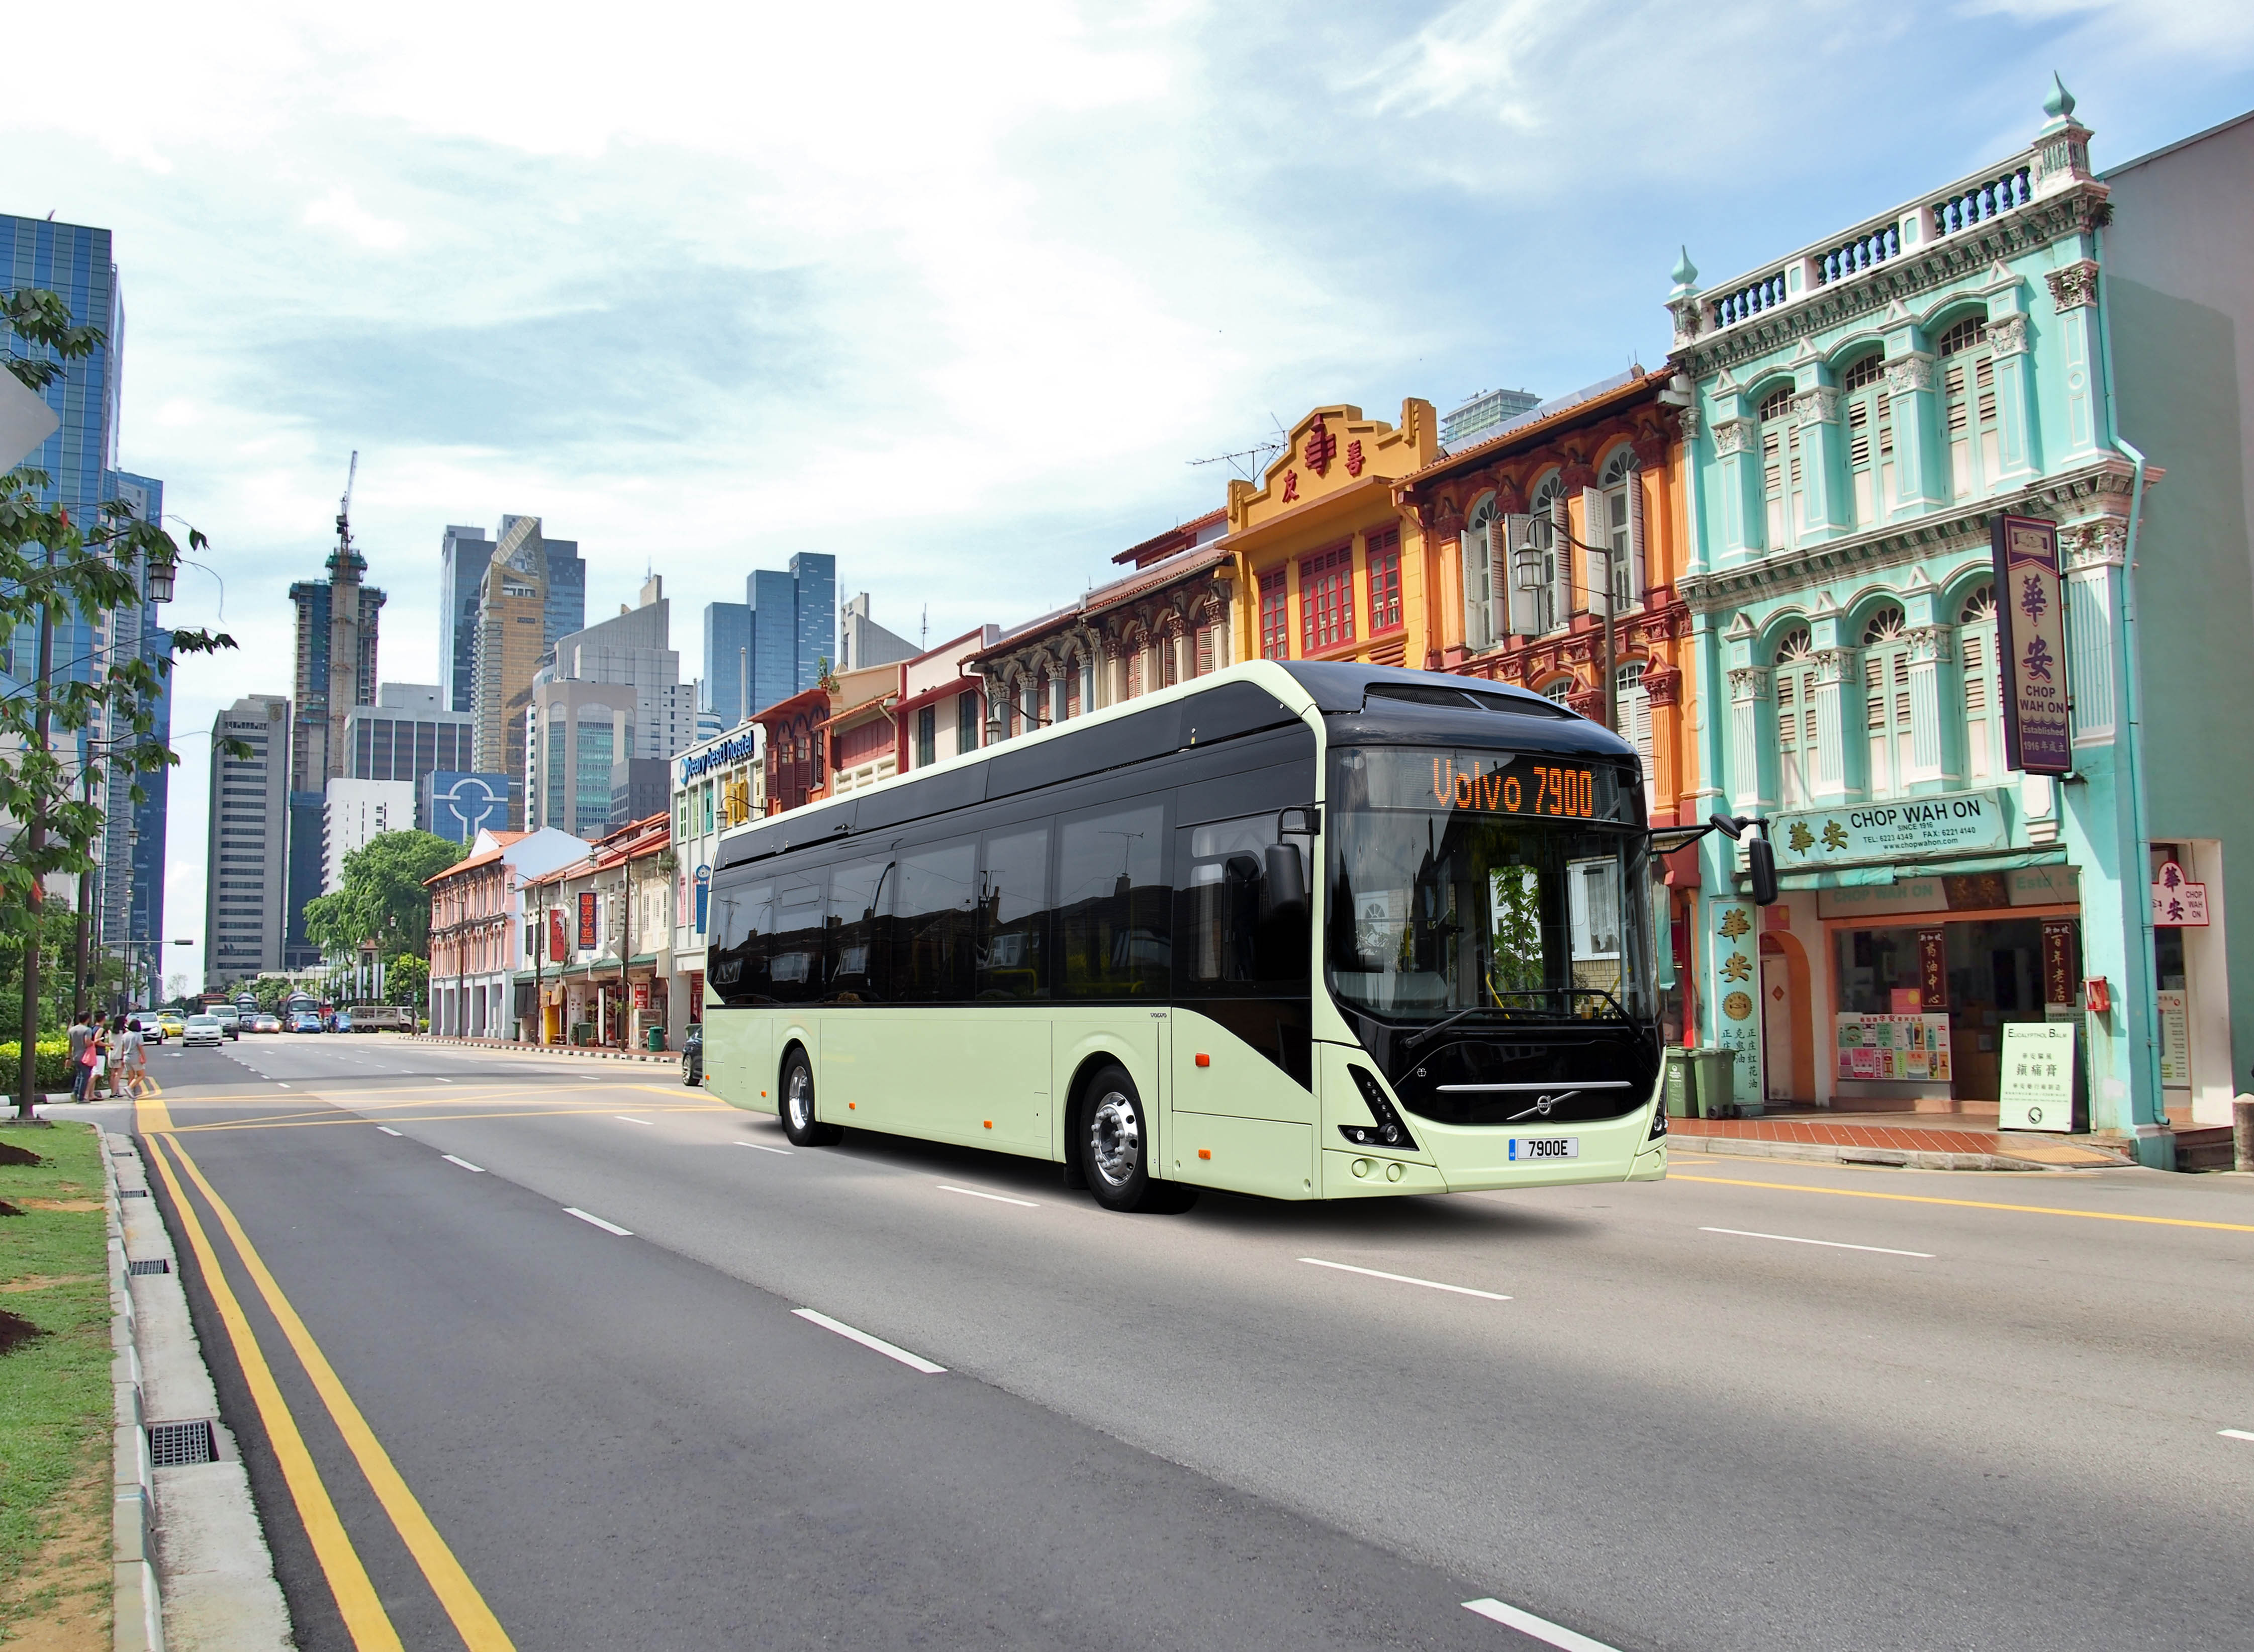 36 milliárd forint van félretéve zöld buszok vásárlására és üzemeltetésére